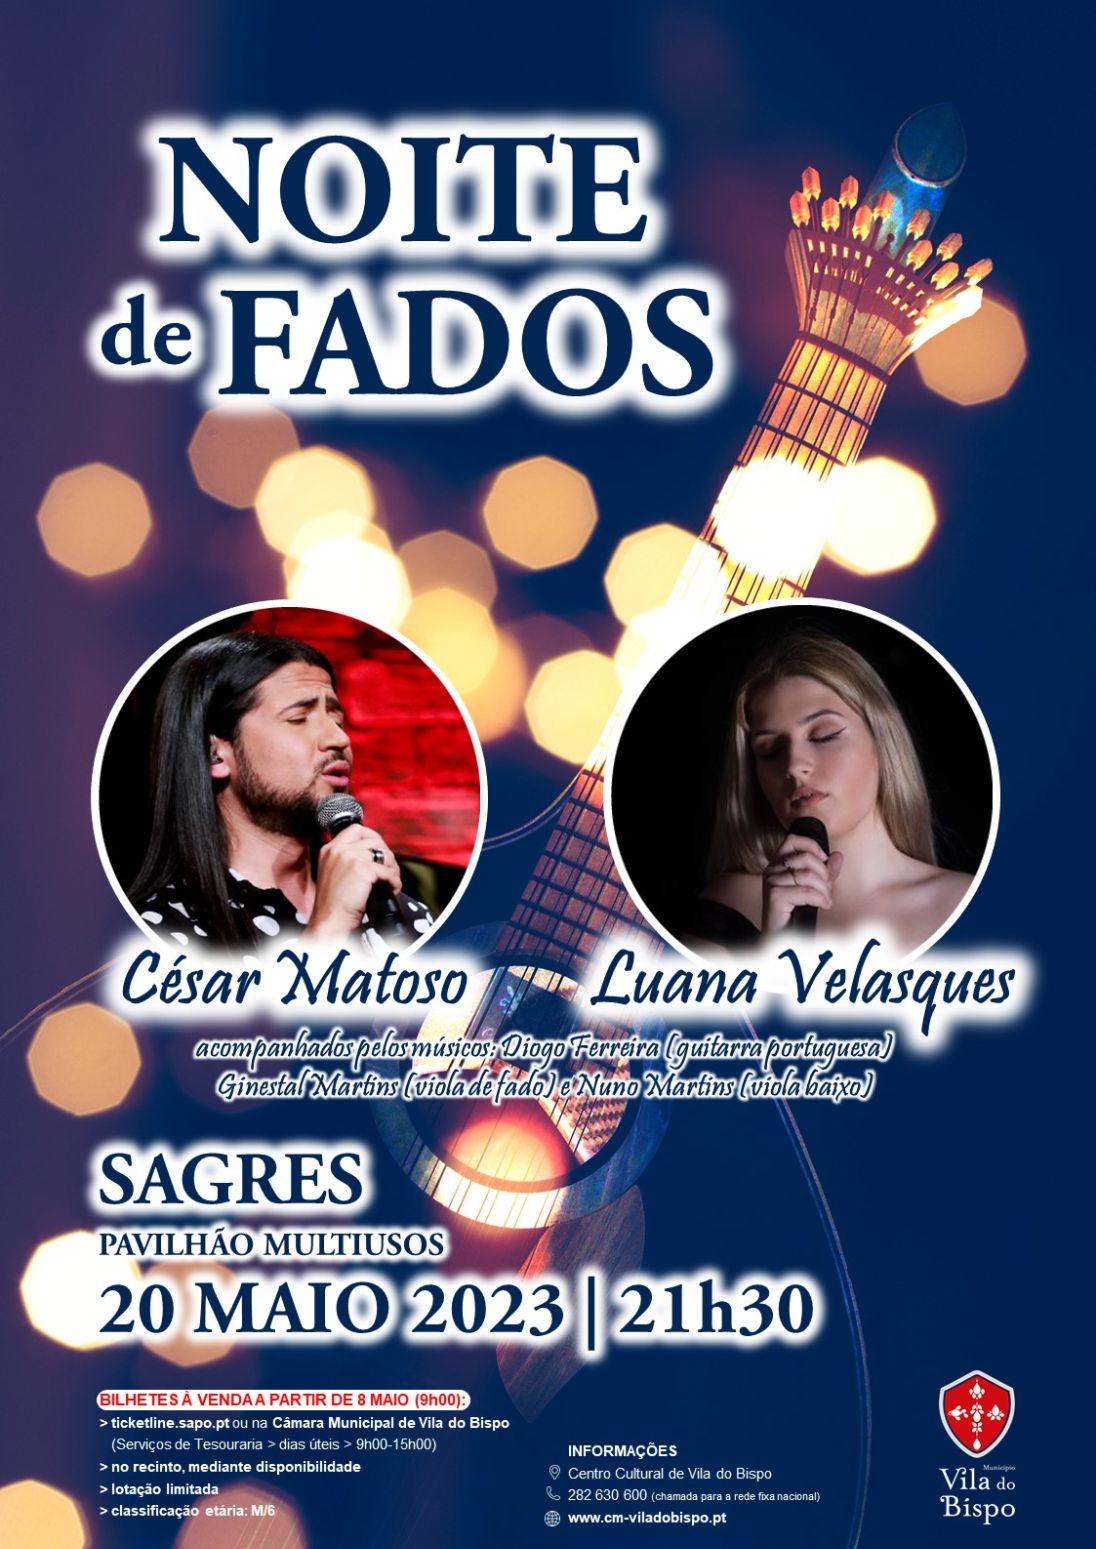 Noite de Fados com César Matoso e Luana Velasques no Pavilhão Multiusos de Sagres